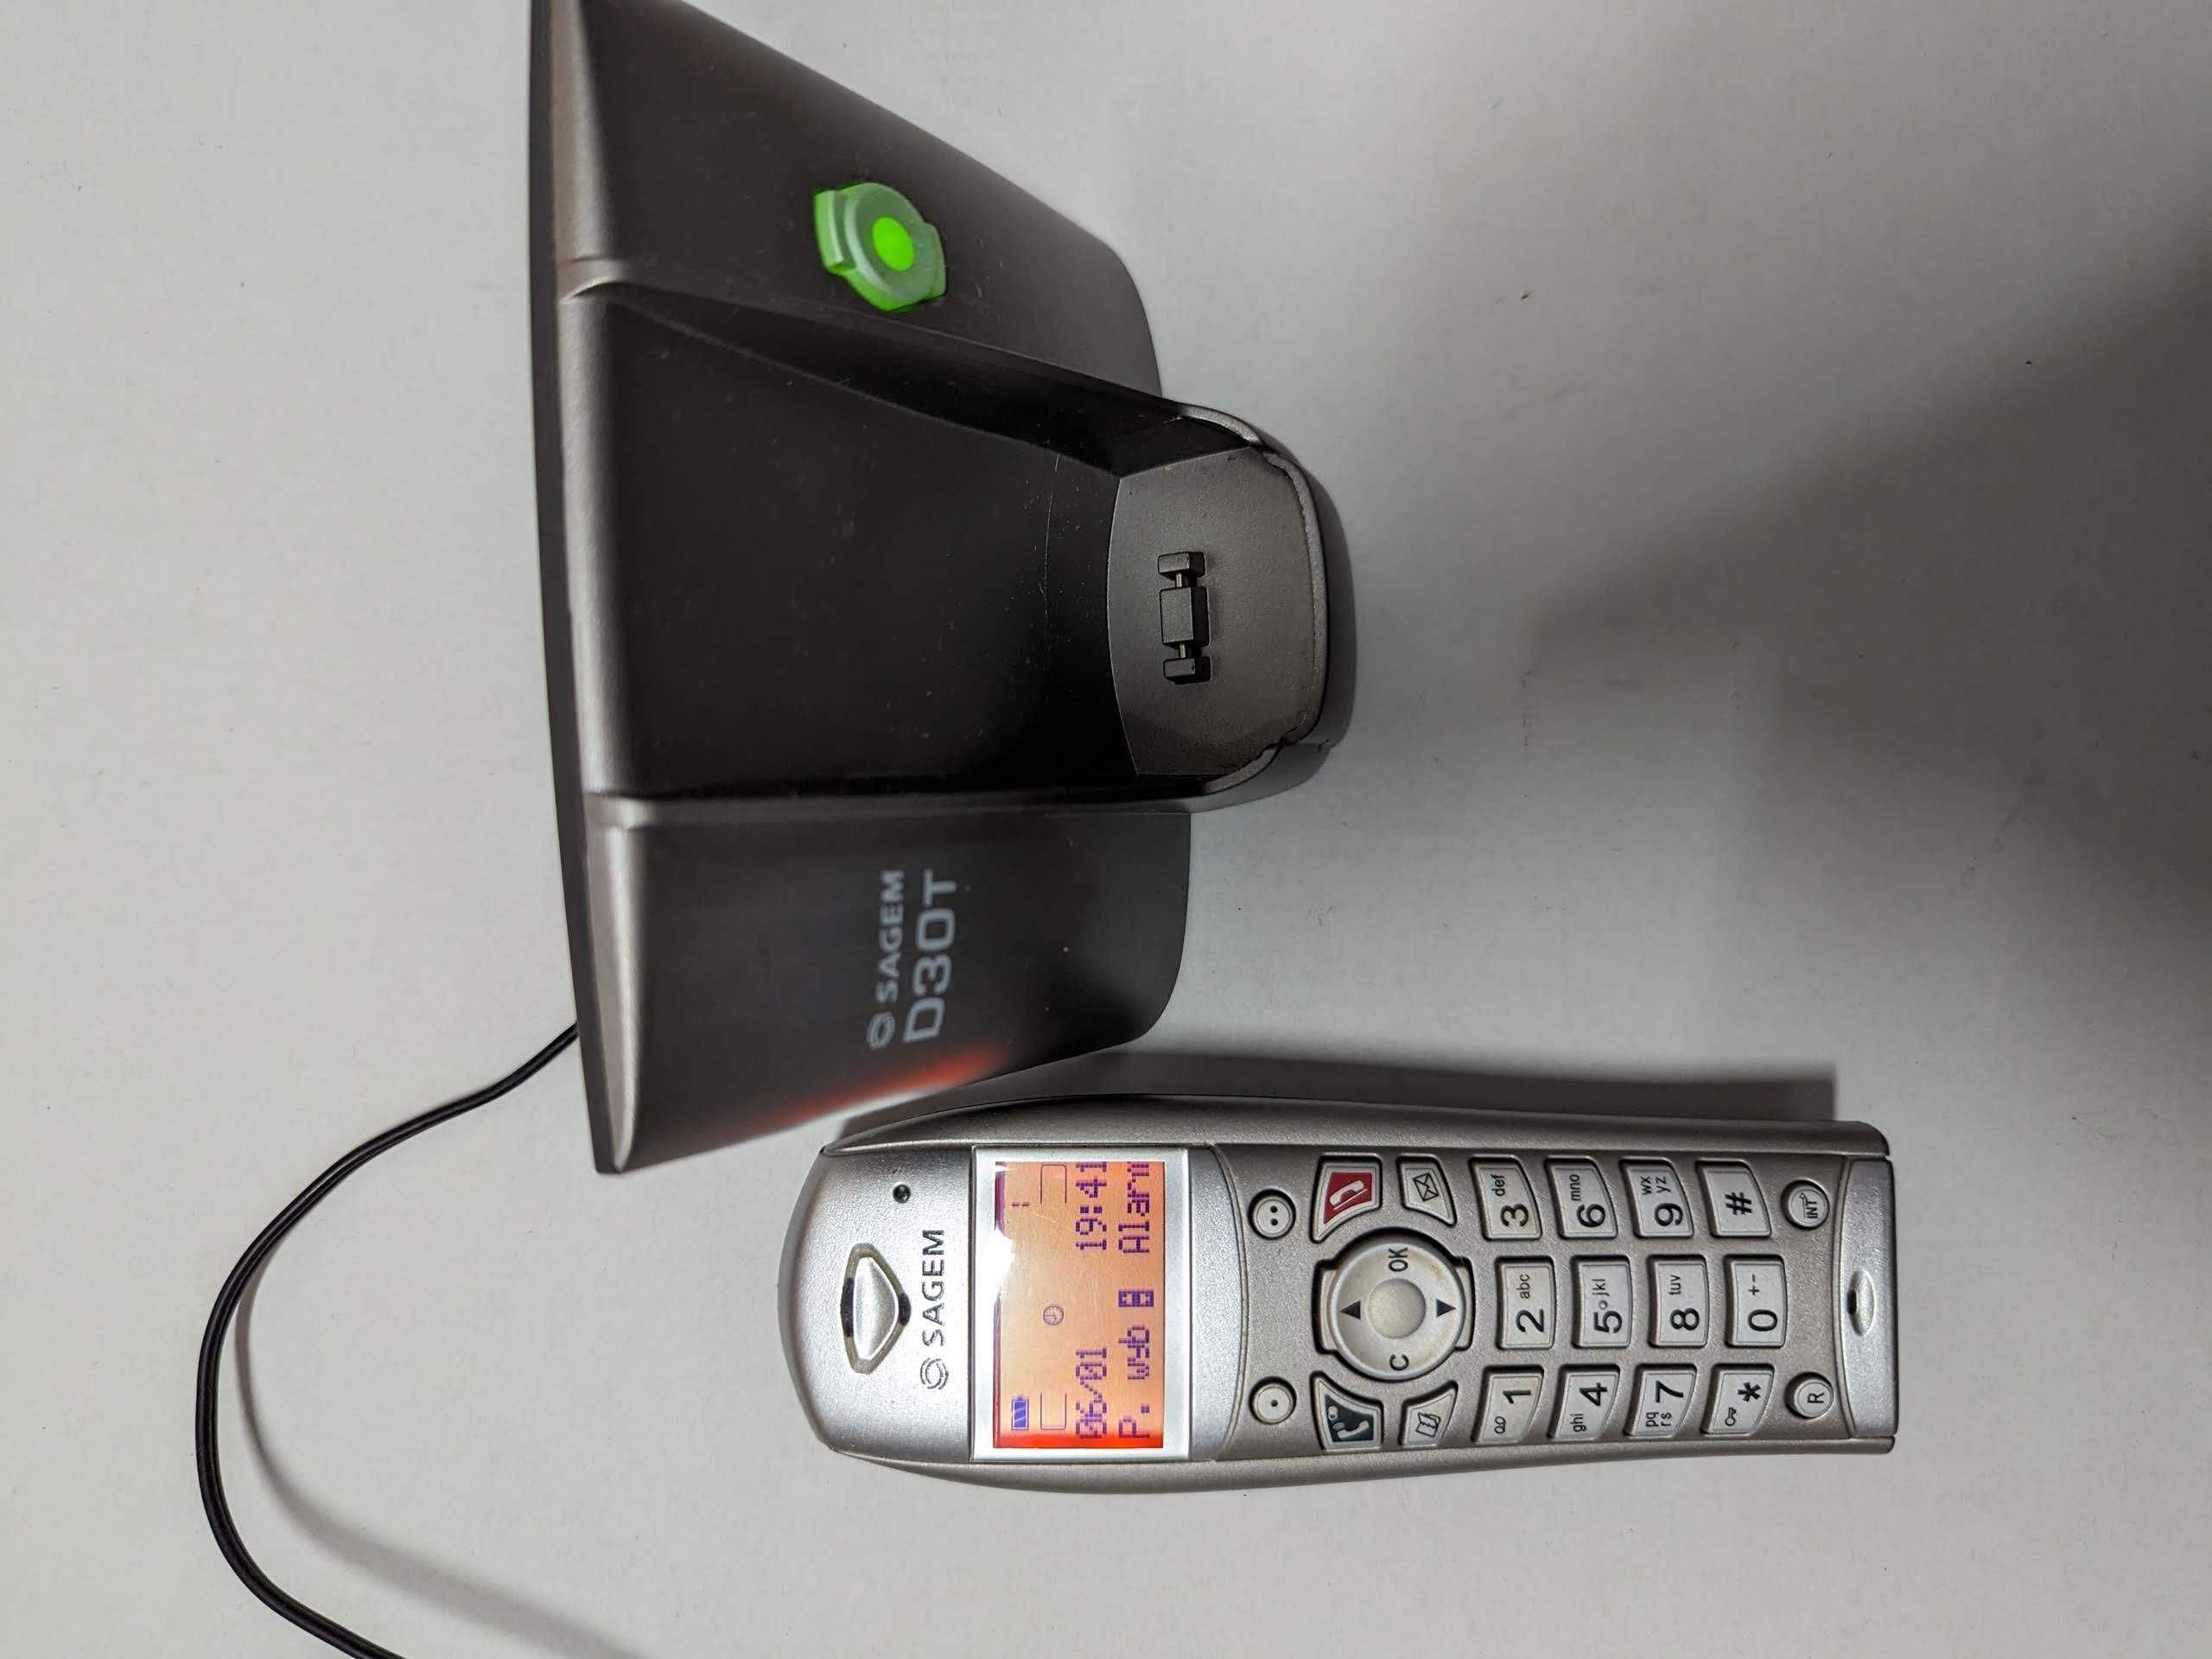 Stacjonarny telefon bezprzewodowy Sagem D30T (analogowy)